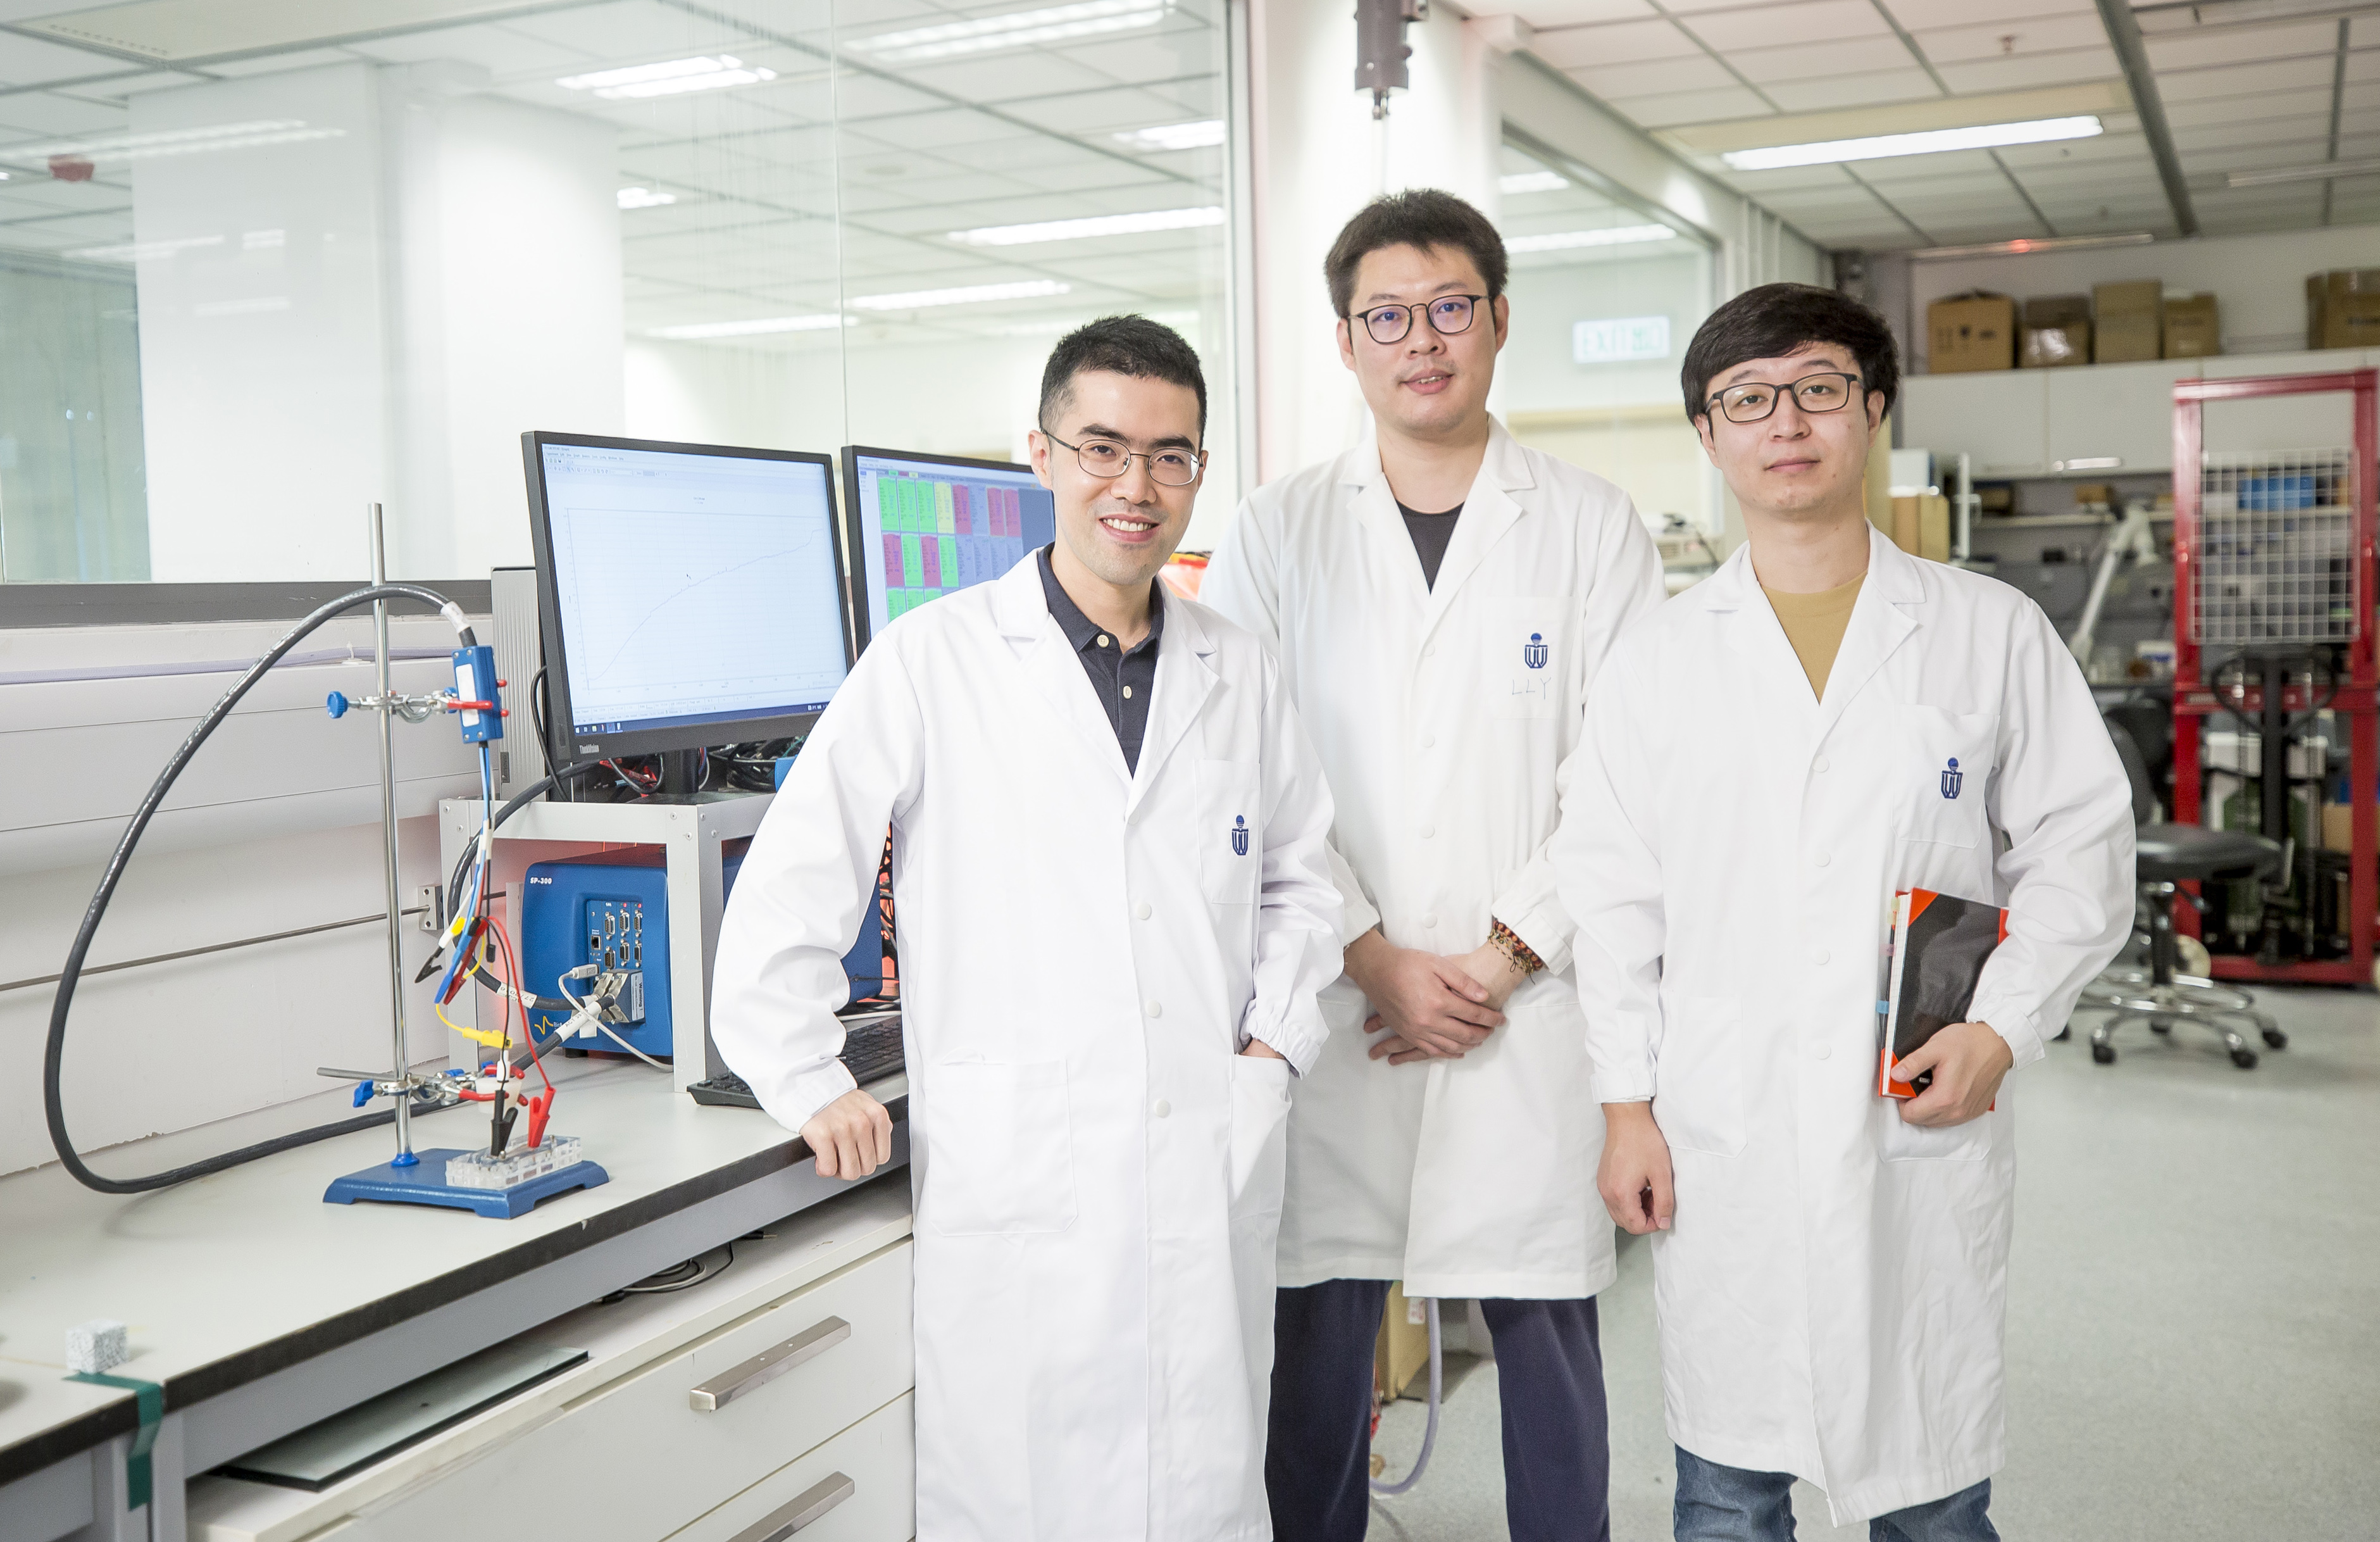 （左起）陈擎教授与其研究团队成员李良昱（博士后研究员）及肖狄文（博士生）于科大能源研究院实验室内。工作桌上正是为制造纳米多孔锌金属电极而设的装置。